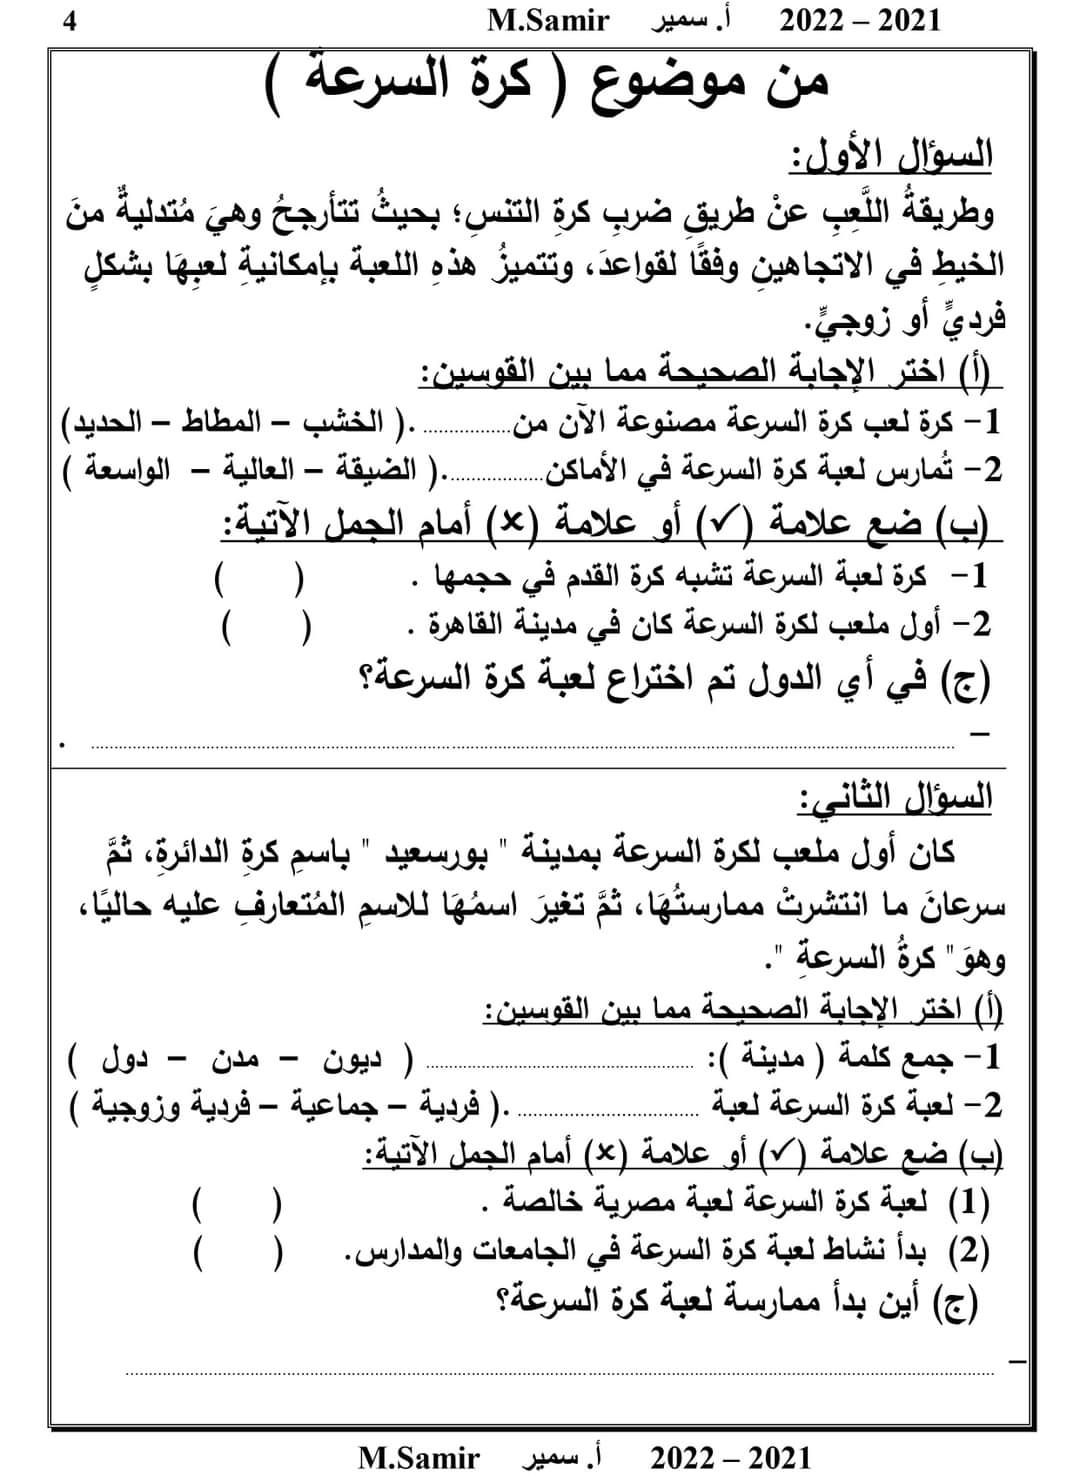 قياس مخرجات لغة عربية رابعة ابتدائي - تدريبات لغة عربية رابعة